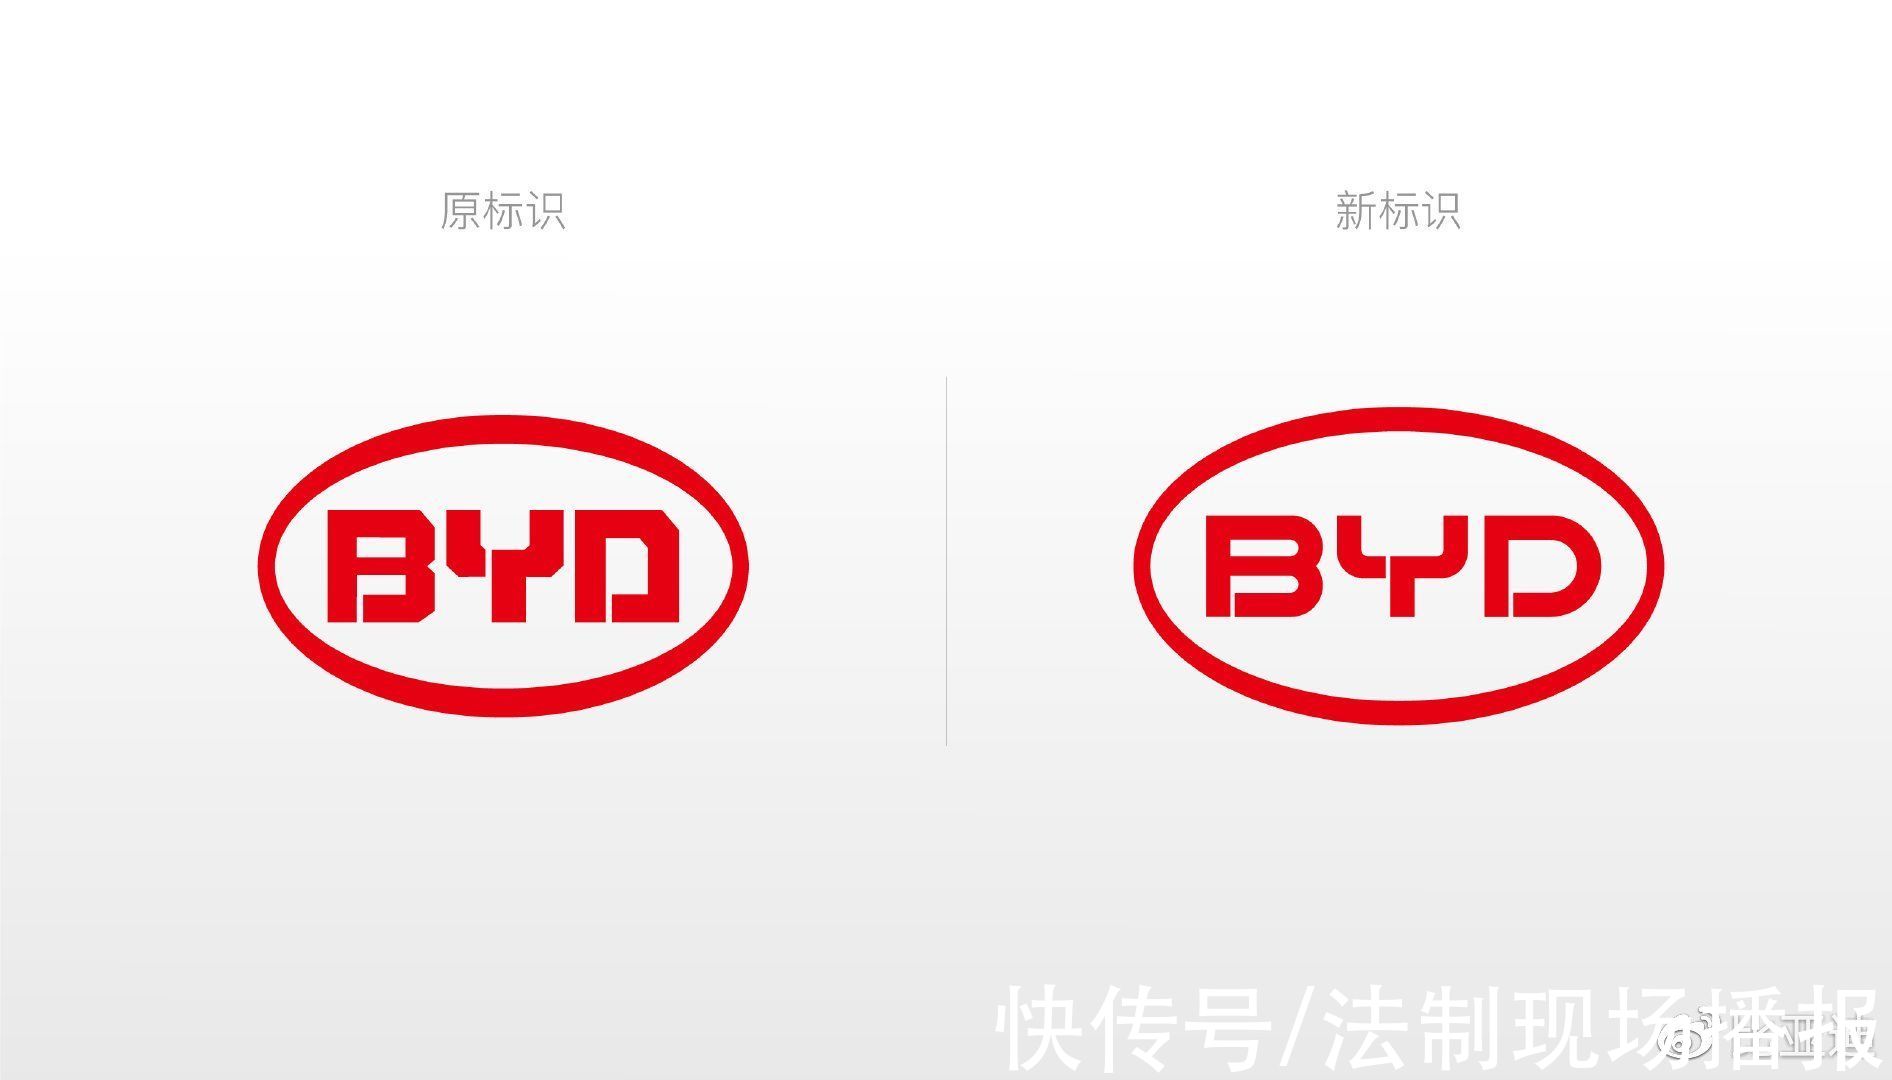 ceo|比亚迪集团换logo引热议，网友:有点像小米之前的logo修改